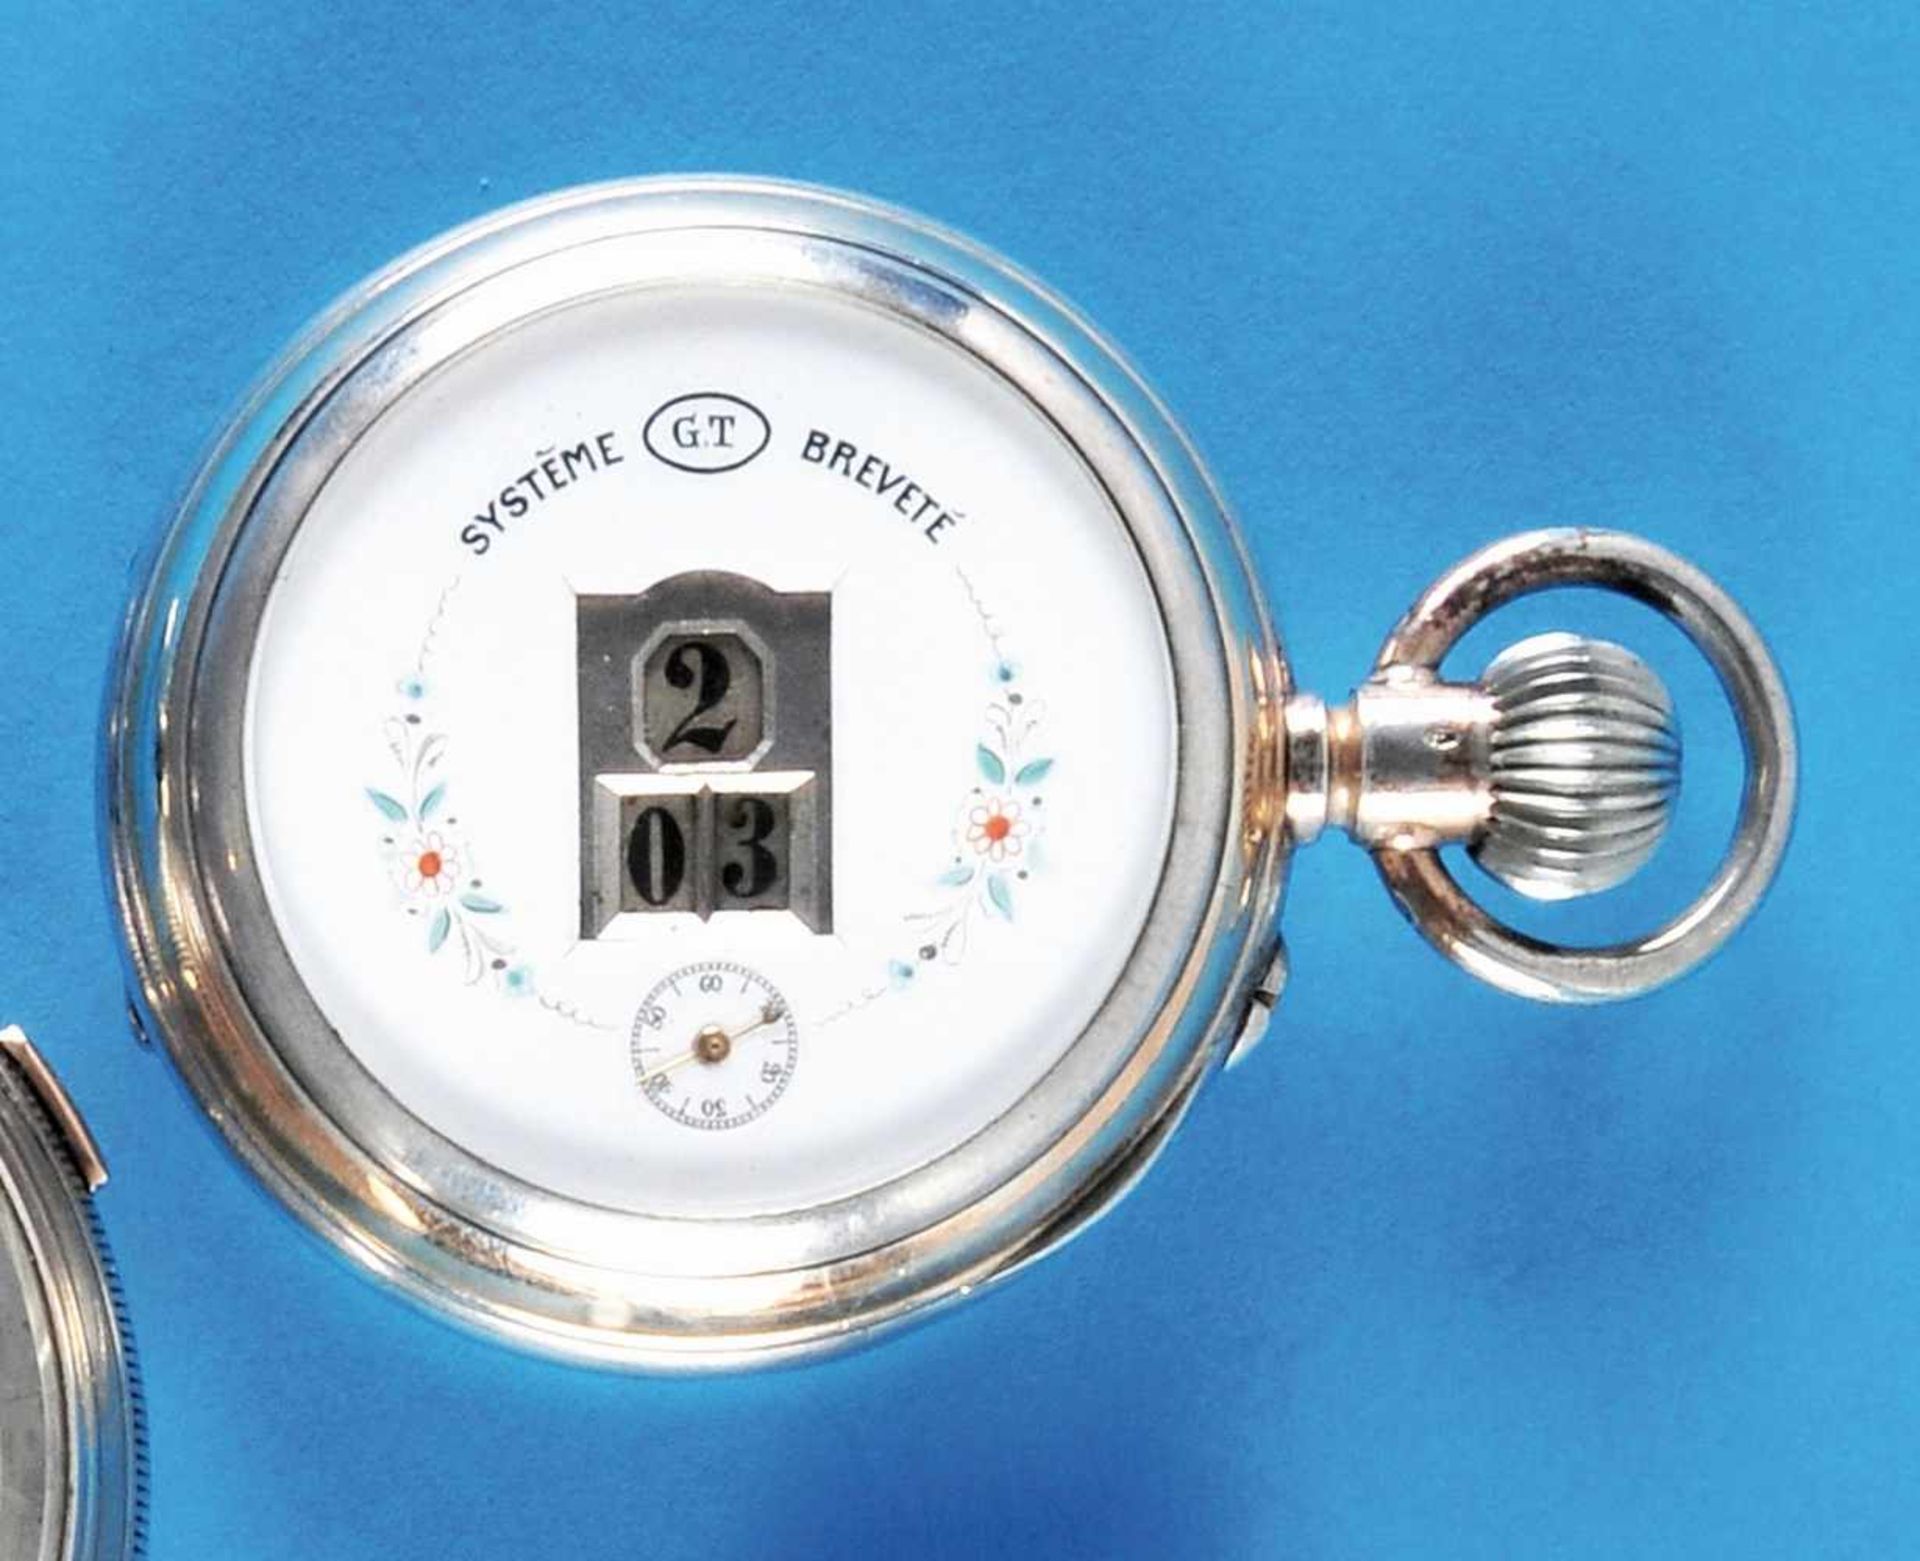 Silver pocket watch with digital dial, GTSilbertaschenuhr mit Digital-Anzeige, GT, guillochiertes